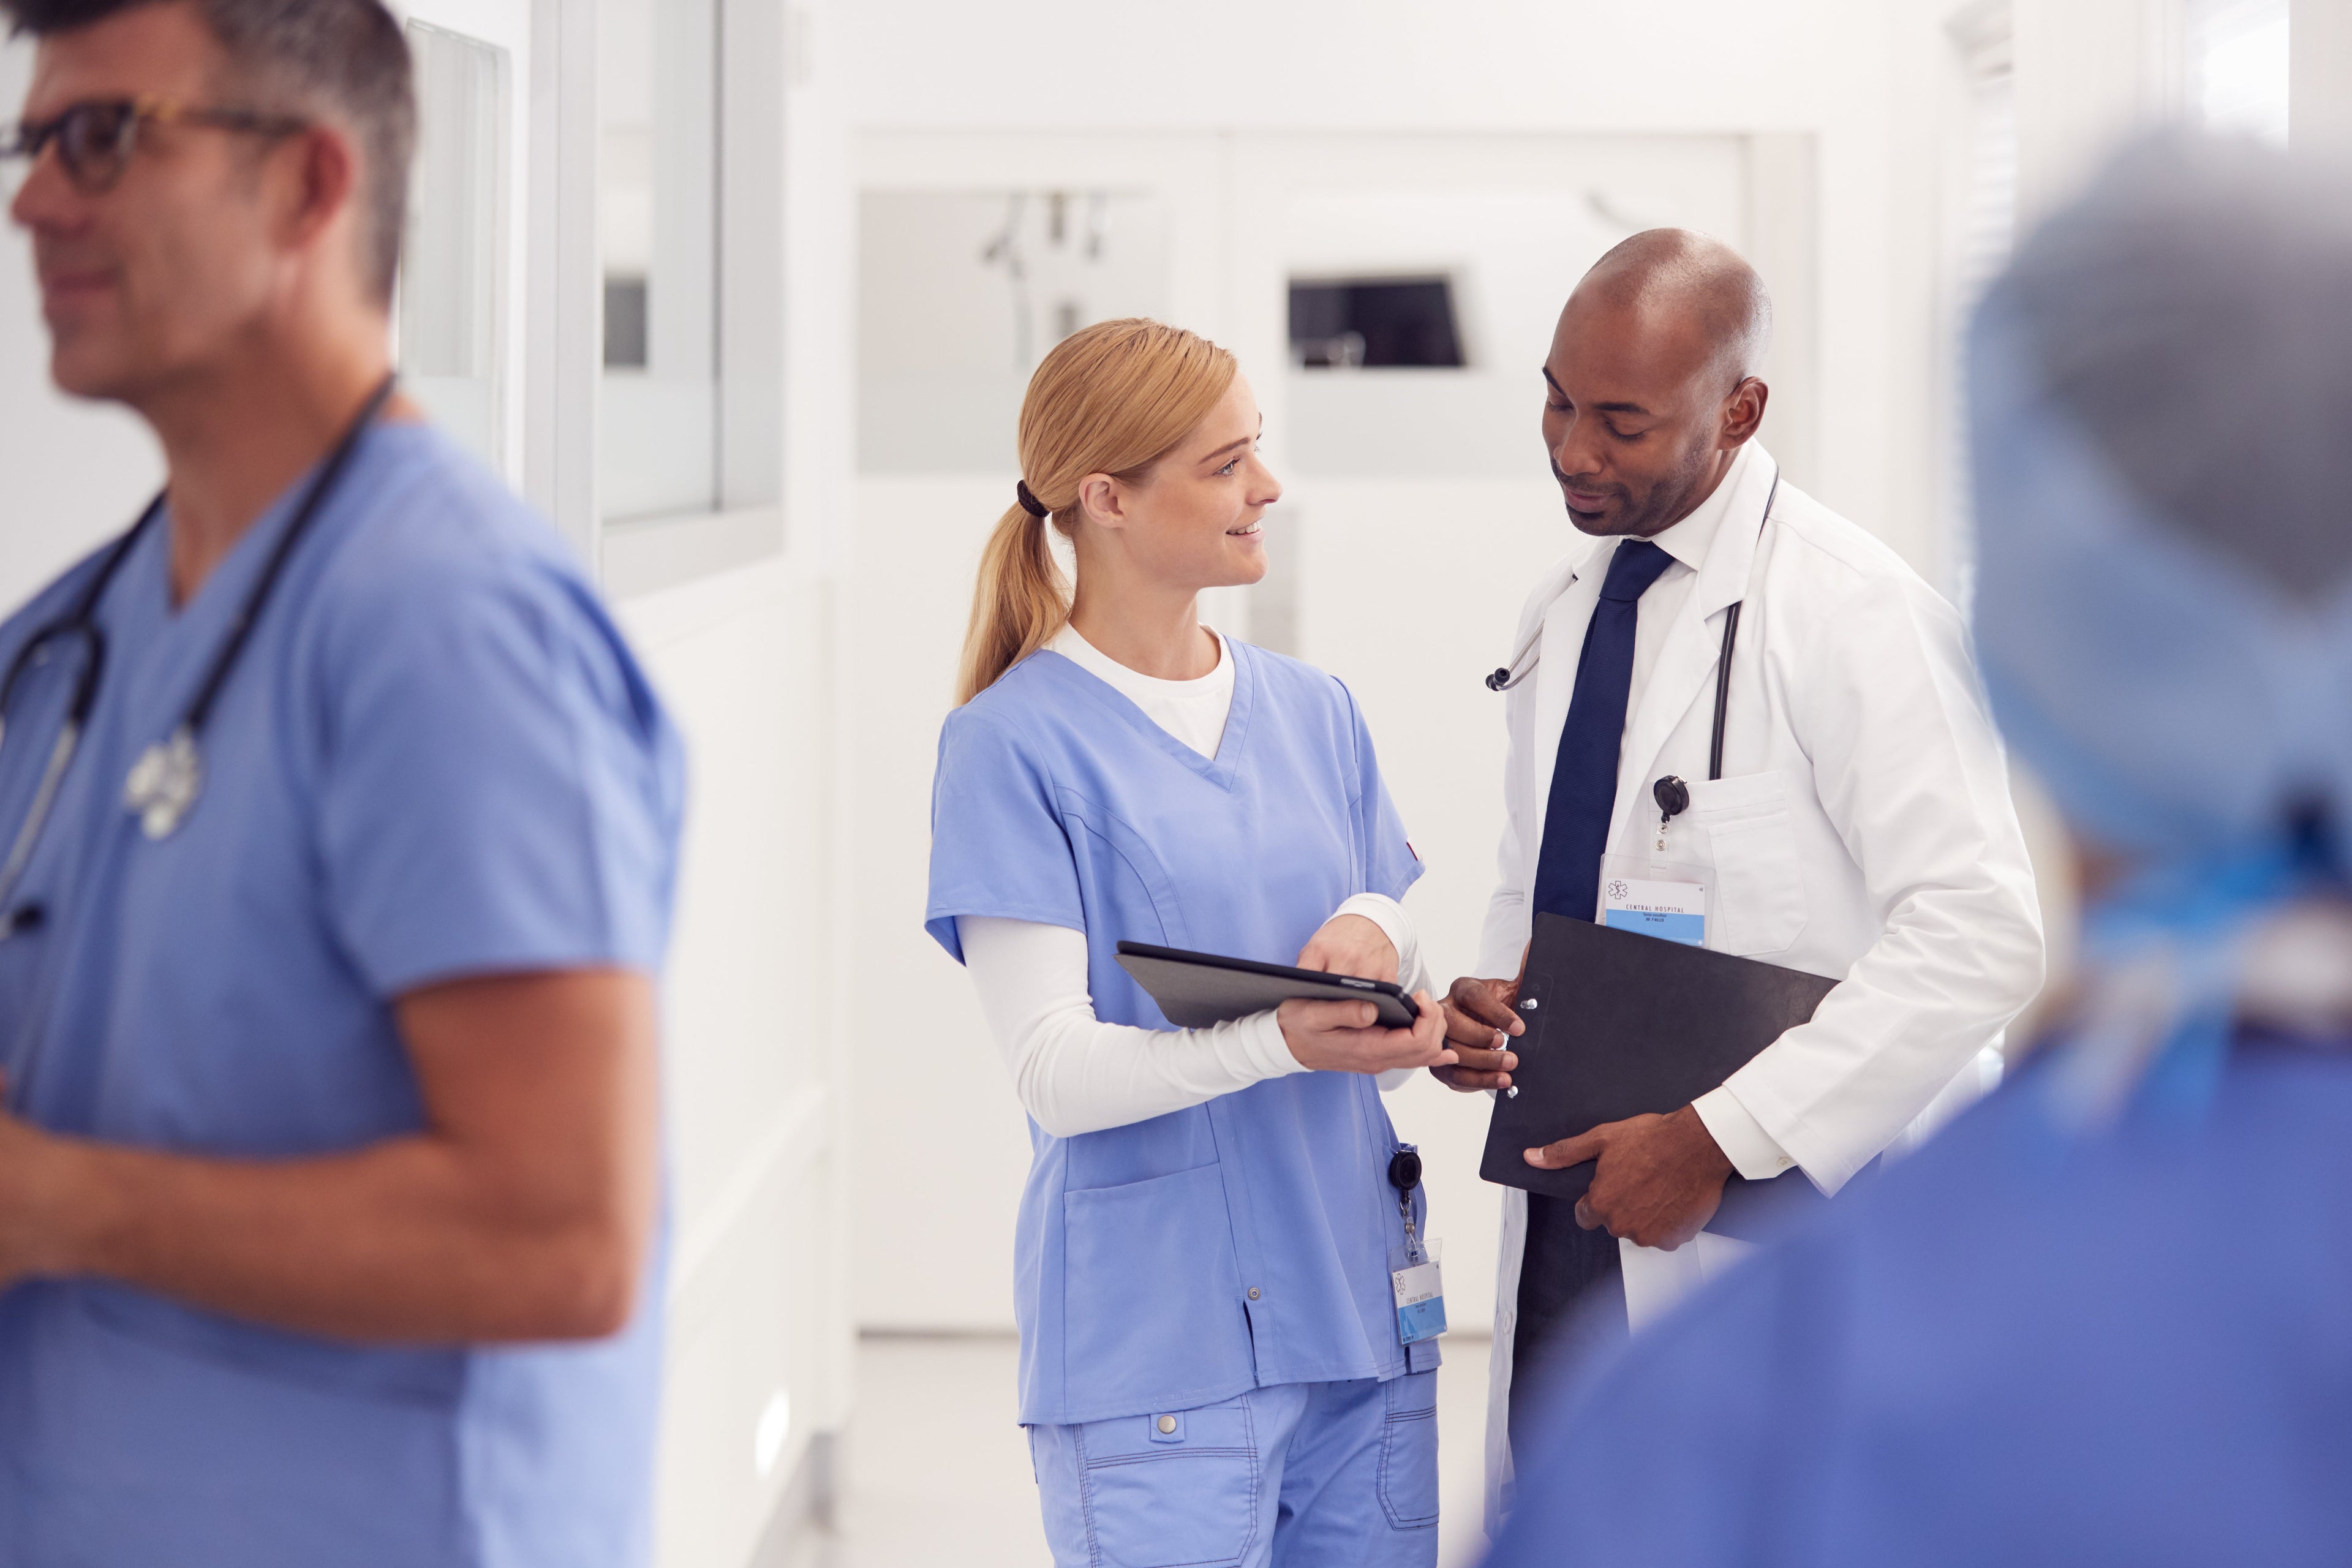 En gruppe leger og sykepleiere snakker i en sykehusgang.